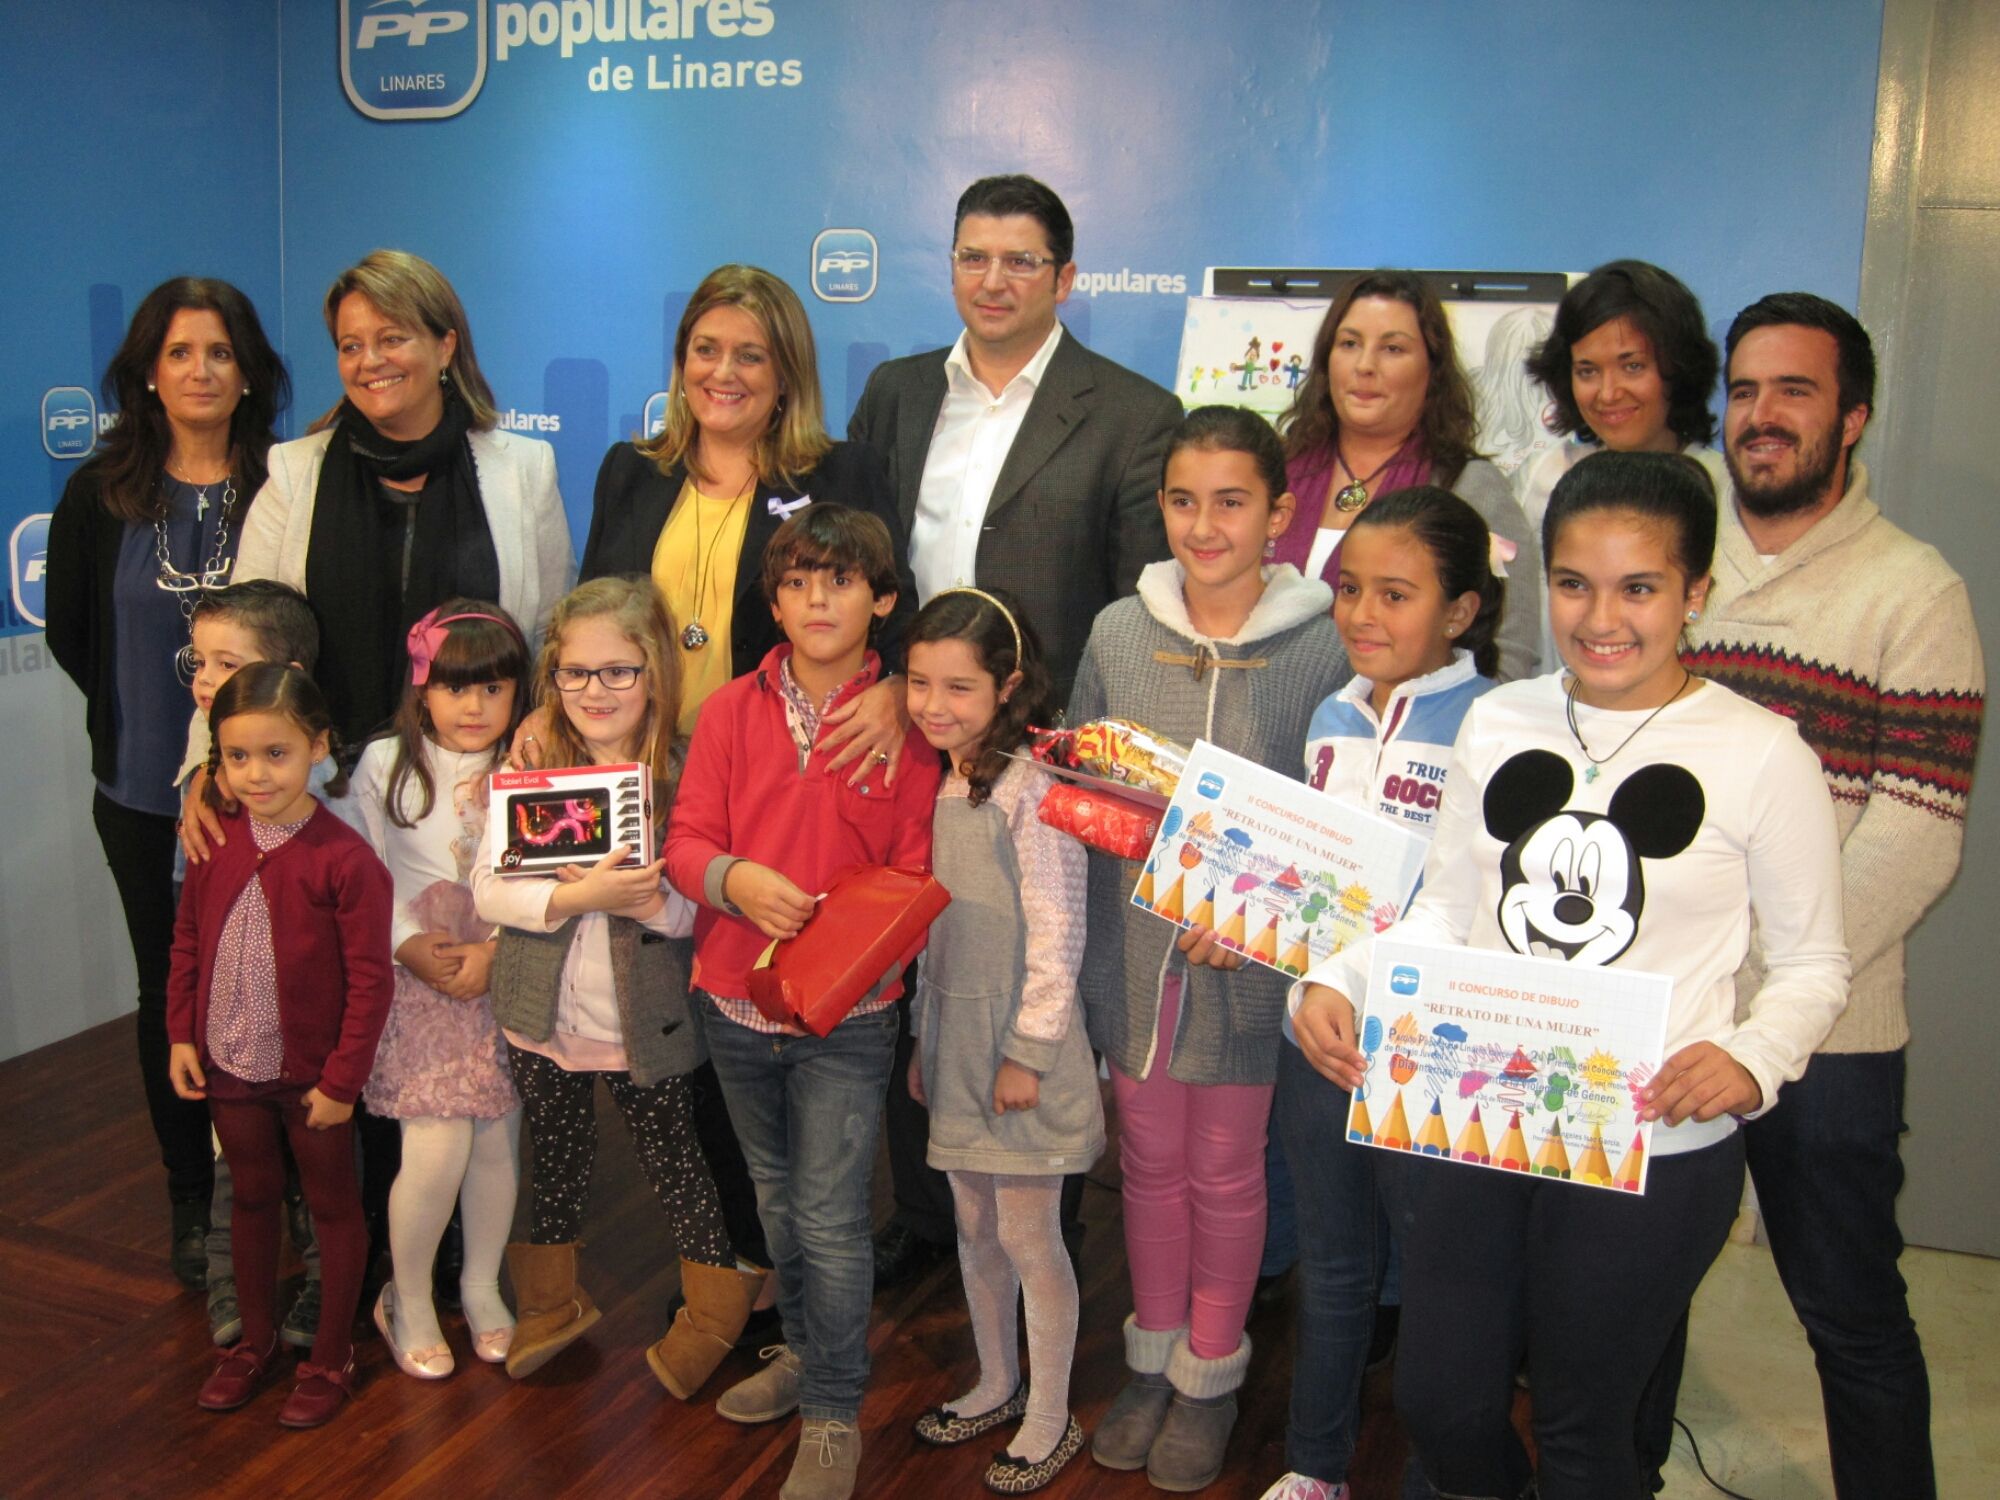 El Partido Popular de Linares entrega los premios del II Concurso de Dibujo ‘Retrato de una Mujer’ con motivo del Día Internacional contra la Violencia de Género